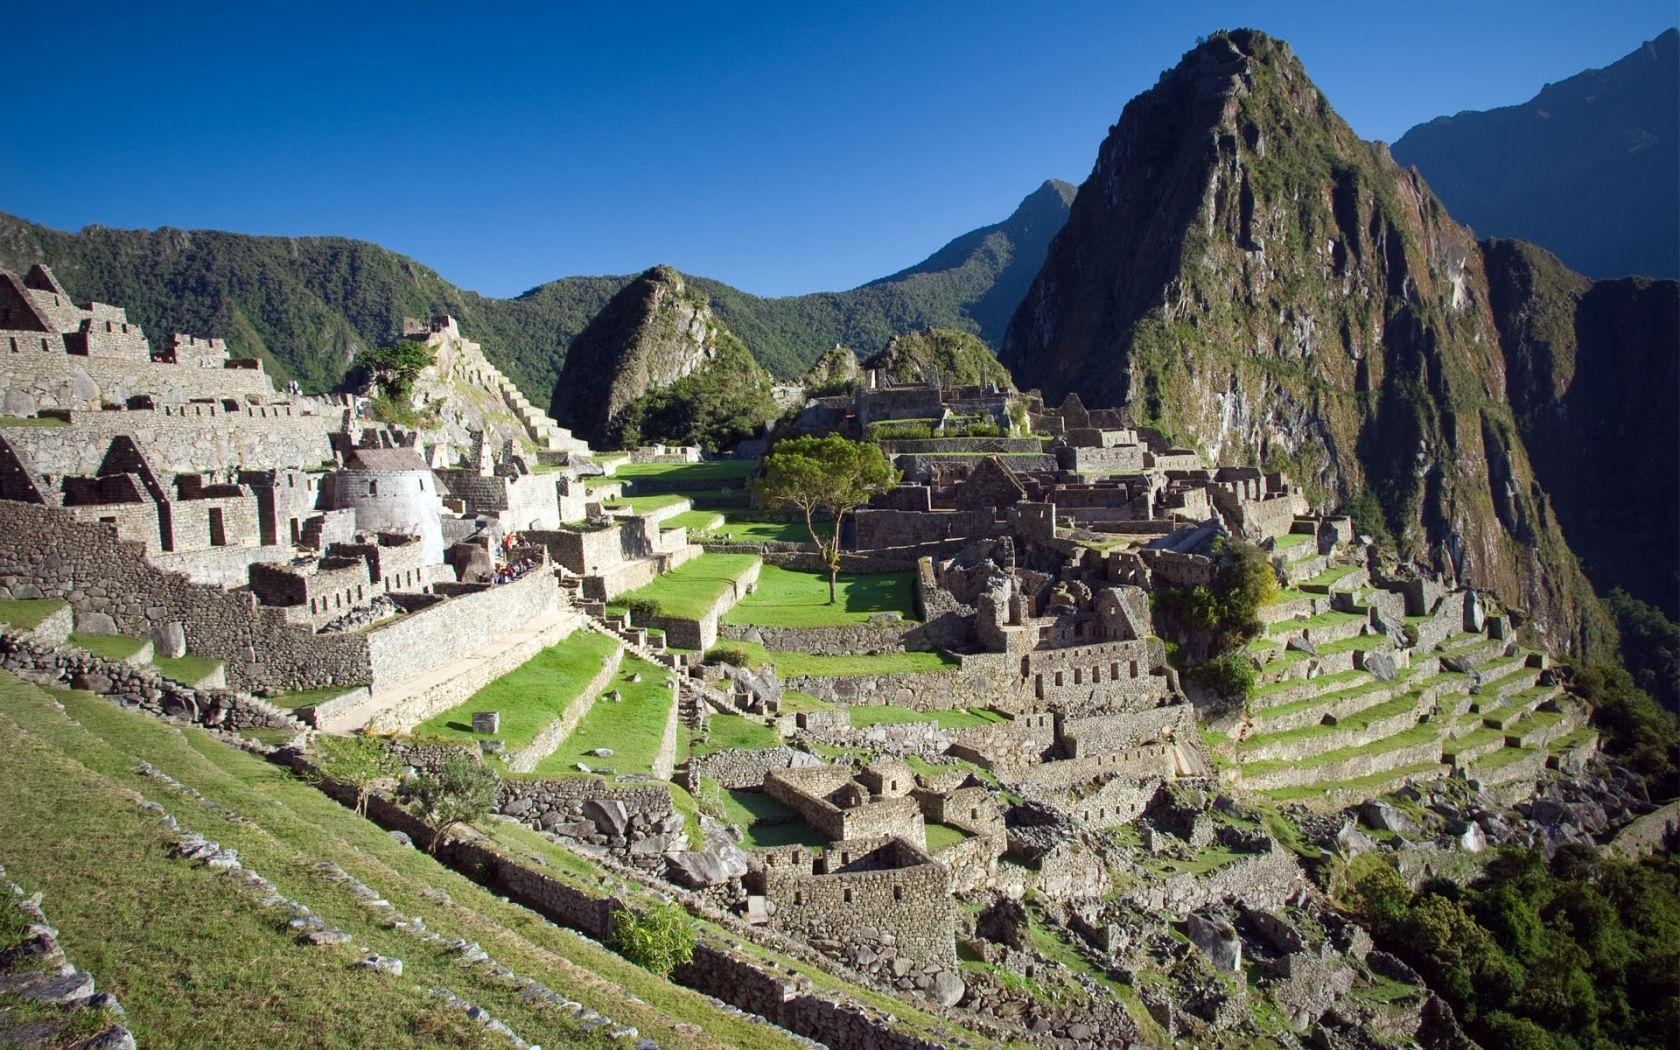 Hd Wallpaper Machu Picchu Peru 1024 X 768 219 Kb Jpeg. HD